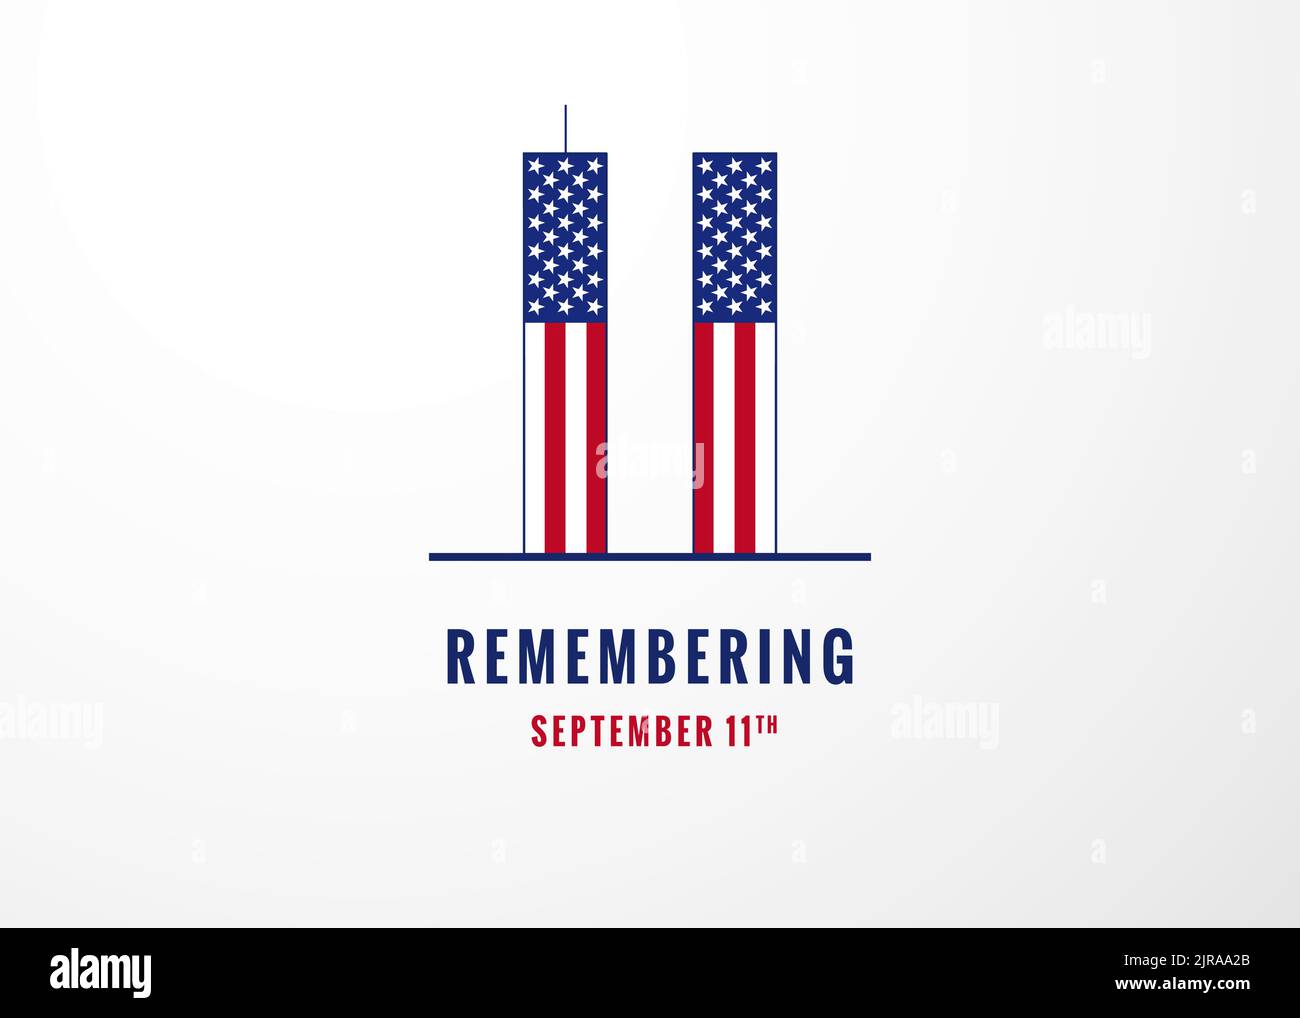 Erinnern Patriot Tag 9,11, Wir werden nie vergessen. Vektor-Illustration der Zwillingstürme, die die Zahl elf darstellen. US-Poster Stock Vektor